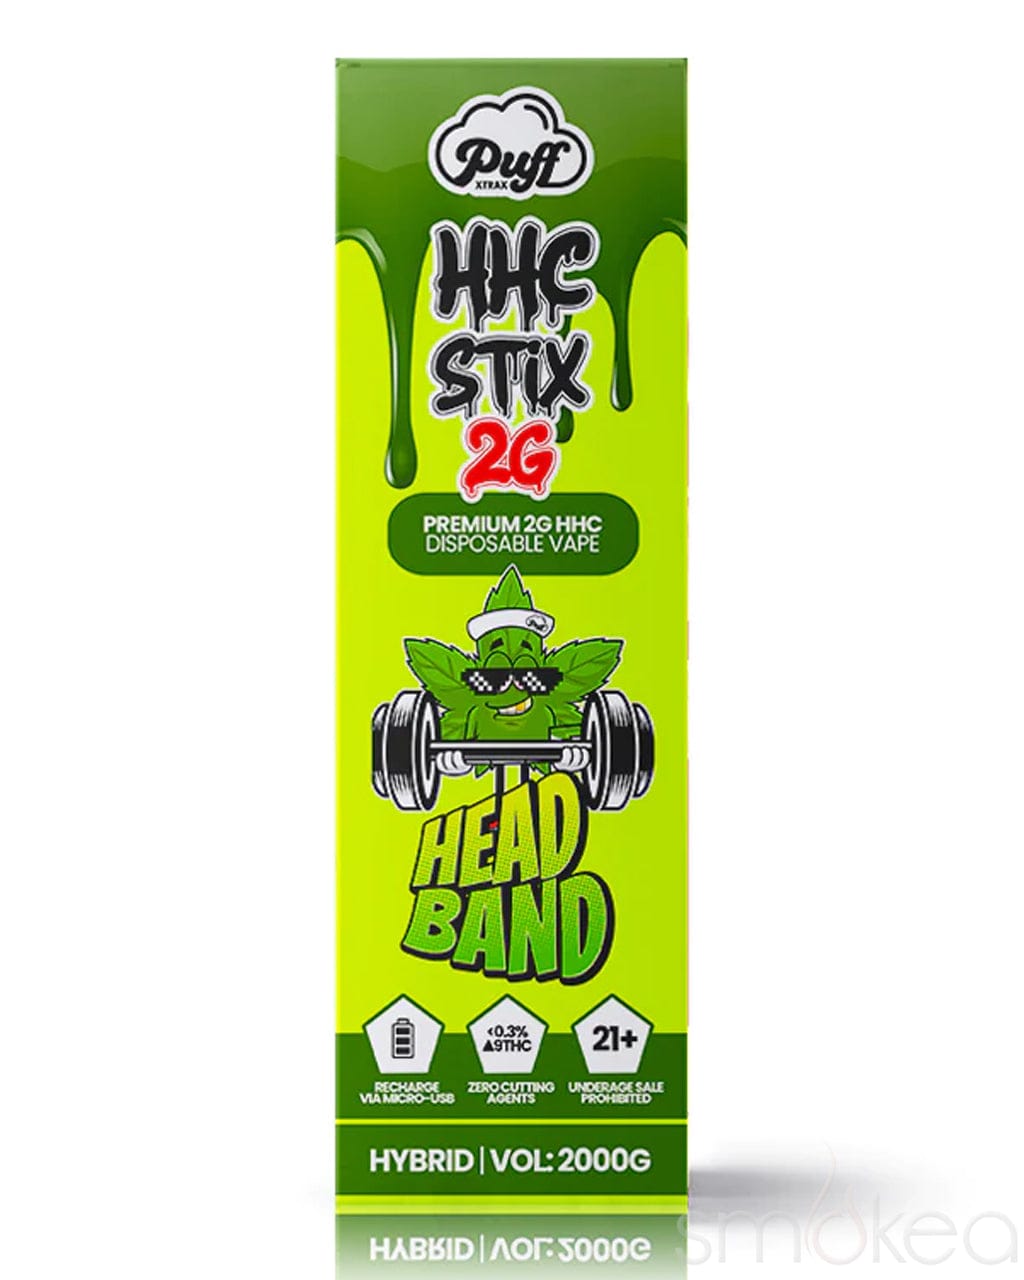 Puff Xtrax 2g HHC Stix Disposable Vape - Headband